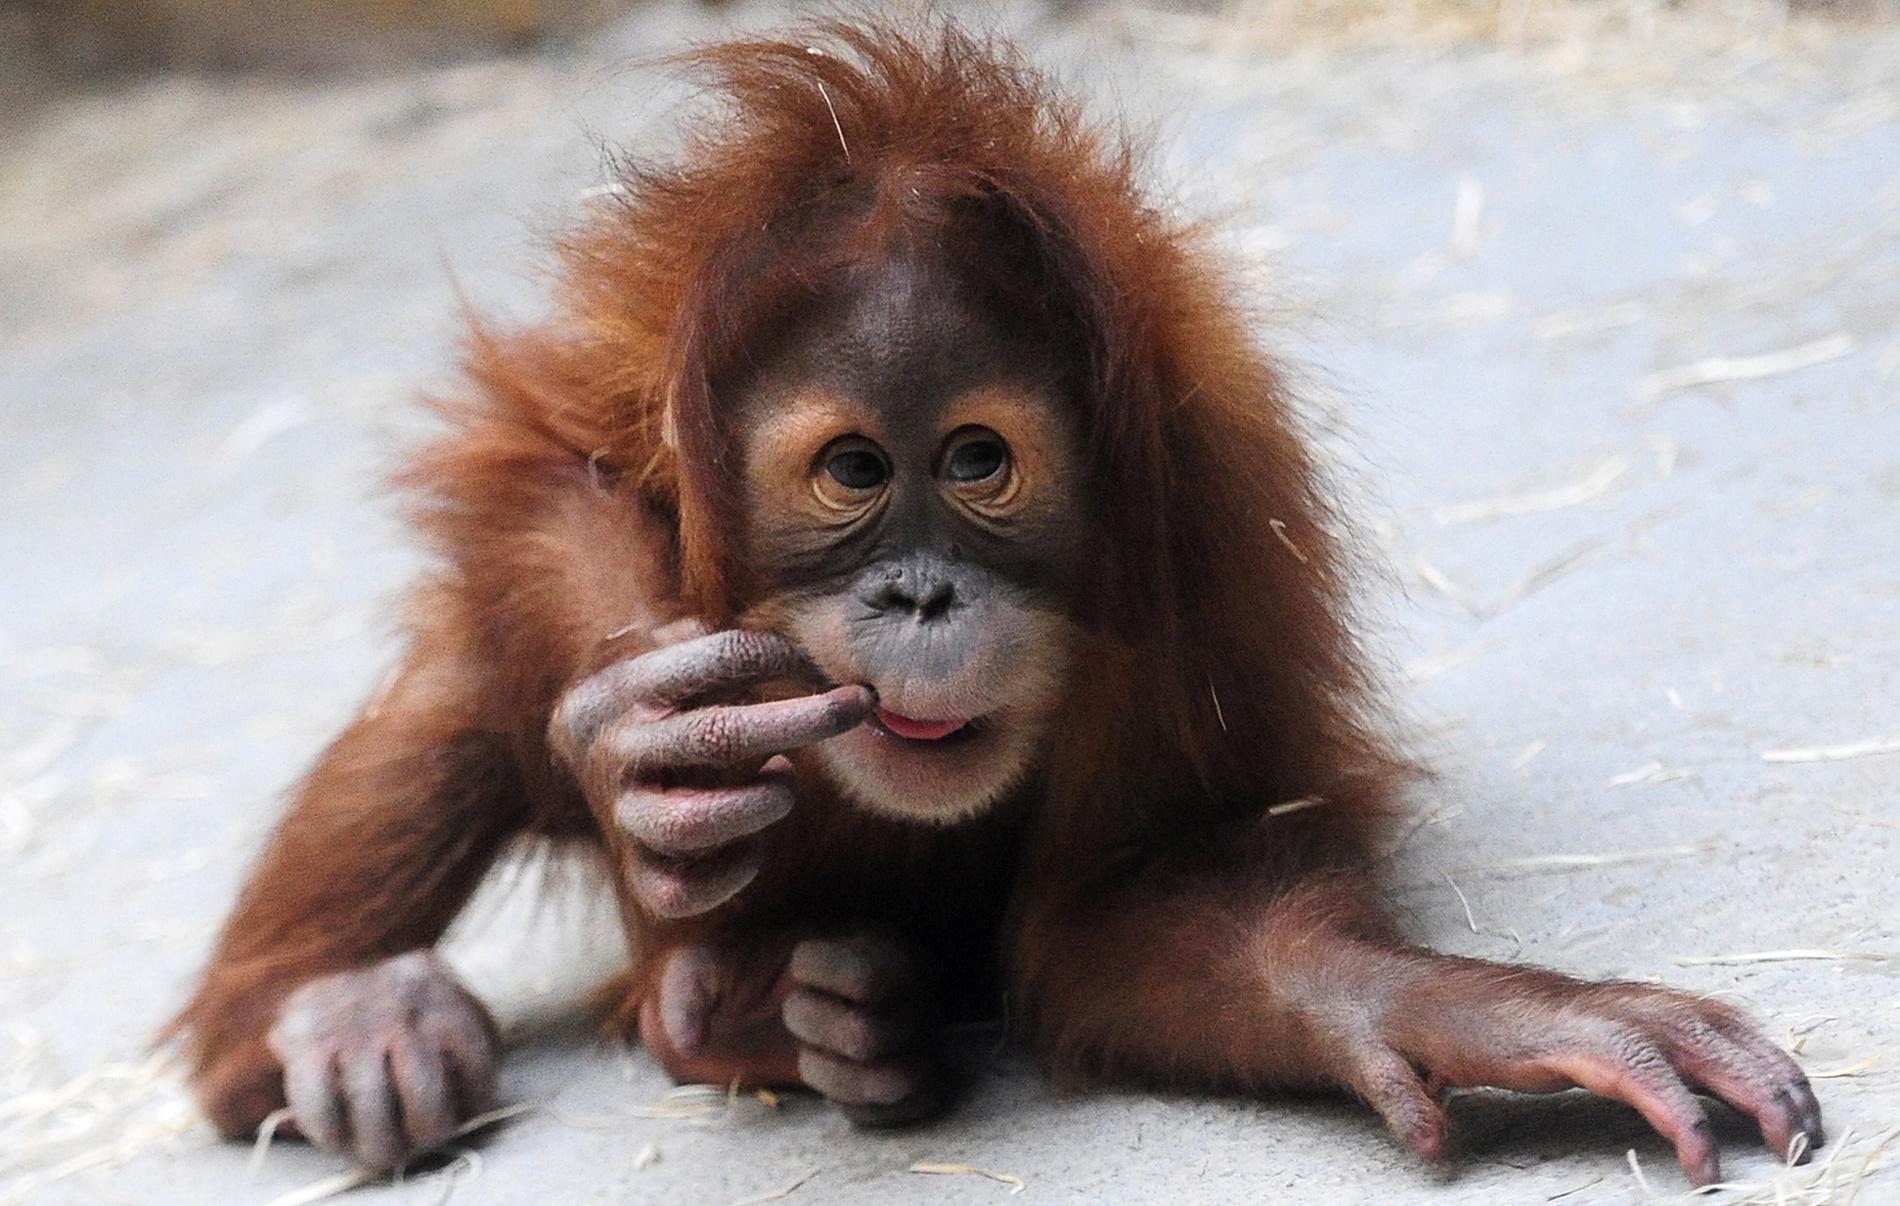 Två unga orangutanger som enligt den malaysiska tullen såg skrämda ut fanns på den misstänkta smuggelbåten. Orangutangen på bilden bor dock på ett zoo i tyska Dresden. Arkivbild.